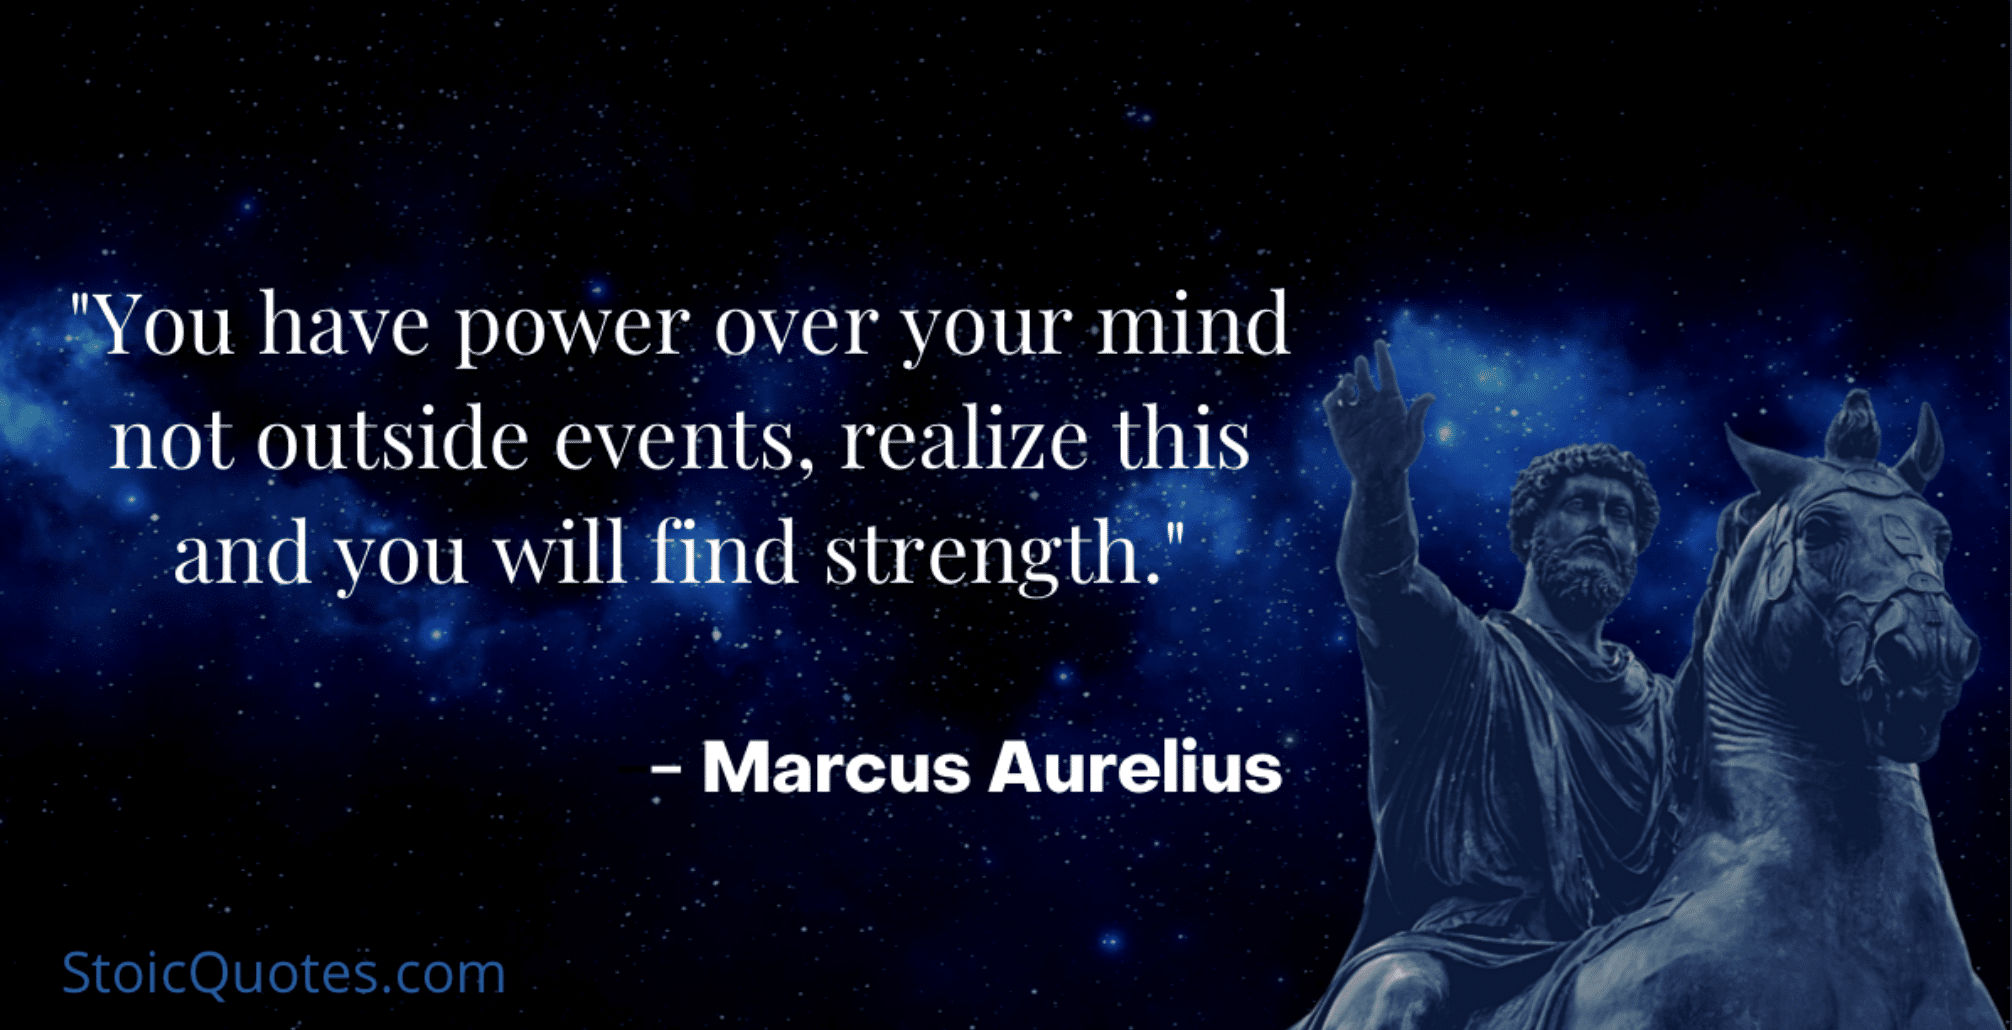 marcus aurelius image and quote on control